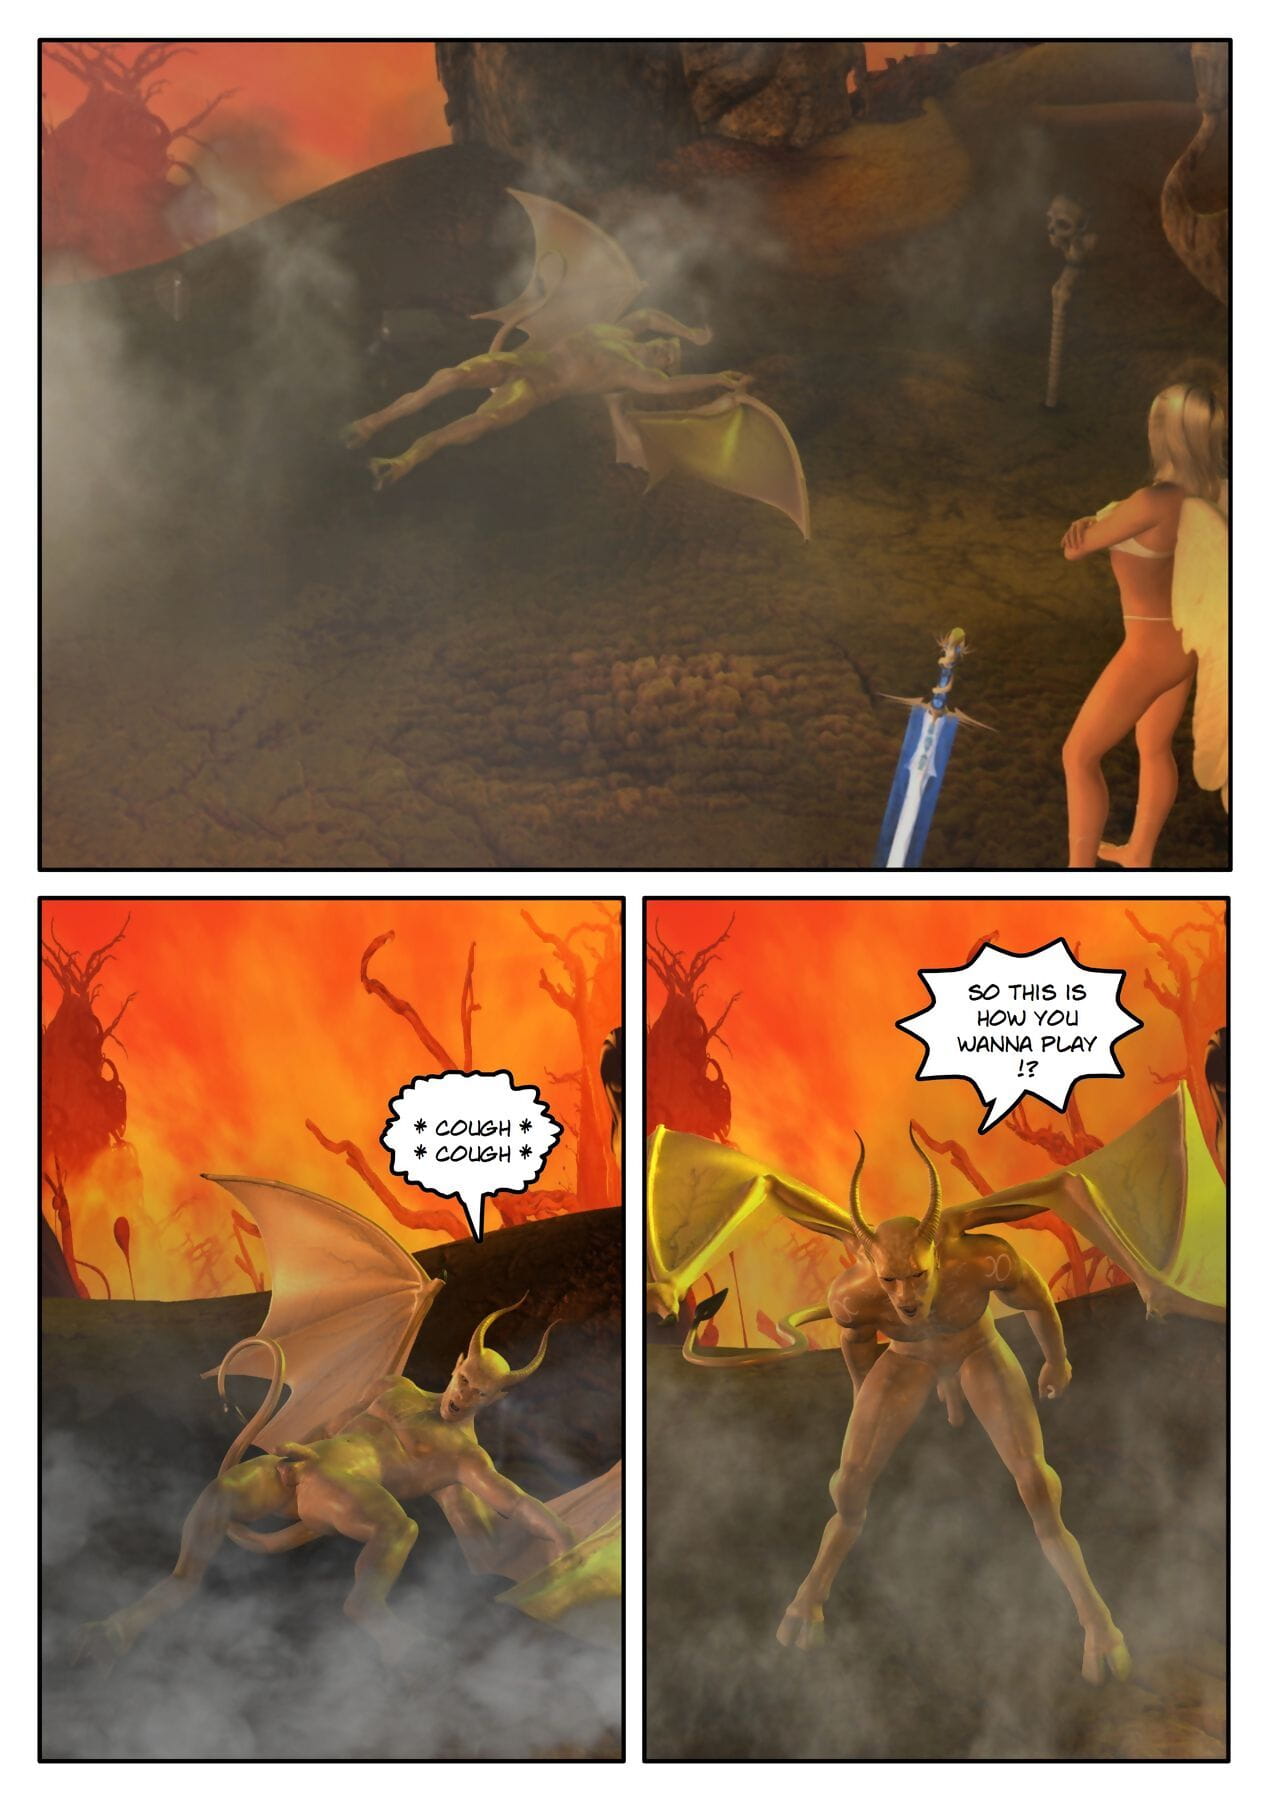 shinra Côn những Fallen ngôi sao ch. 3 Địa ngục phần 4 page 1